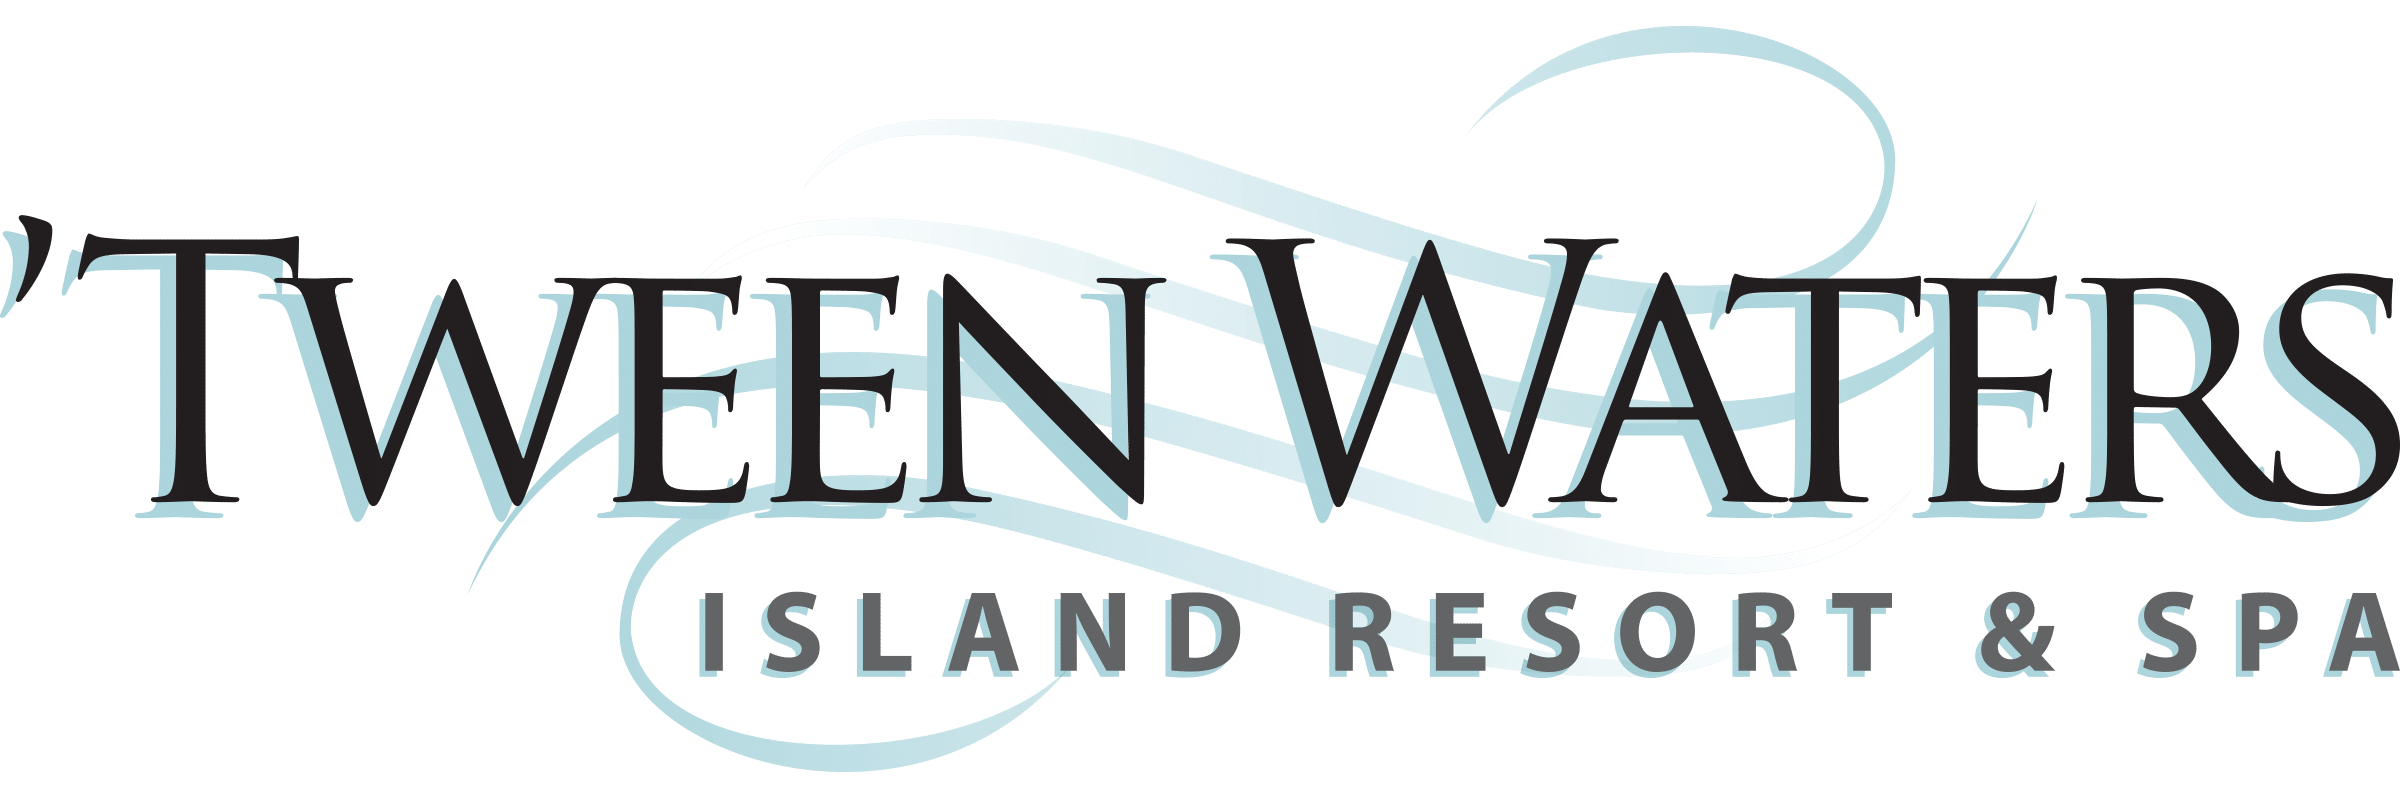 tween waters logo